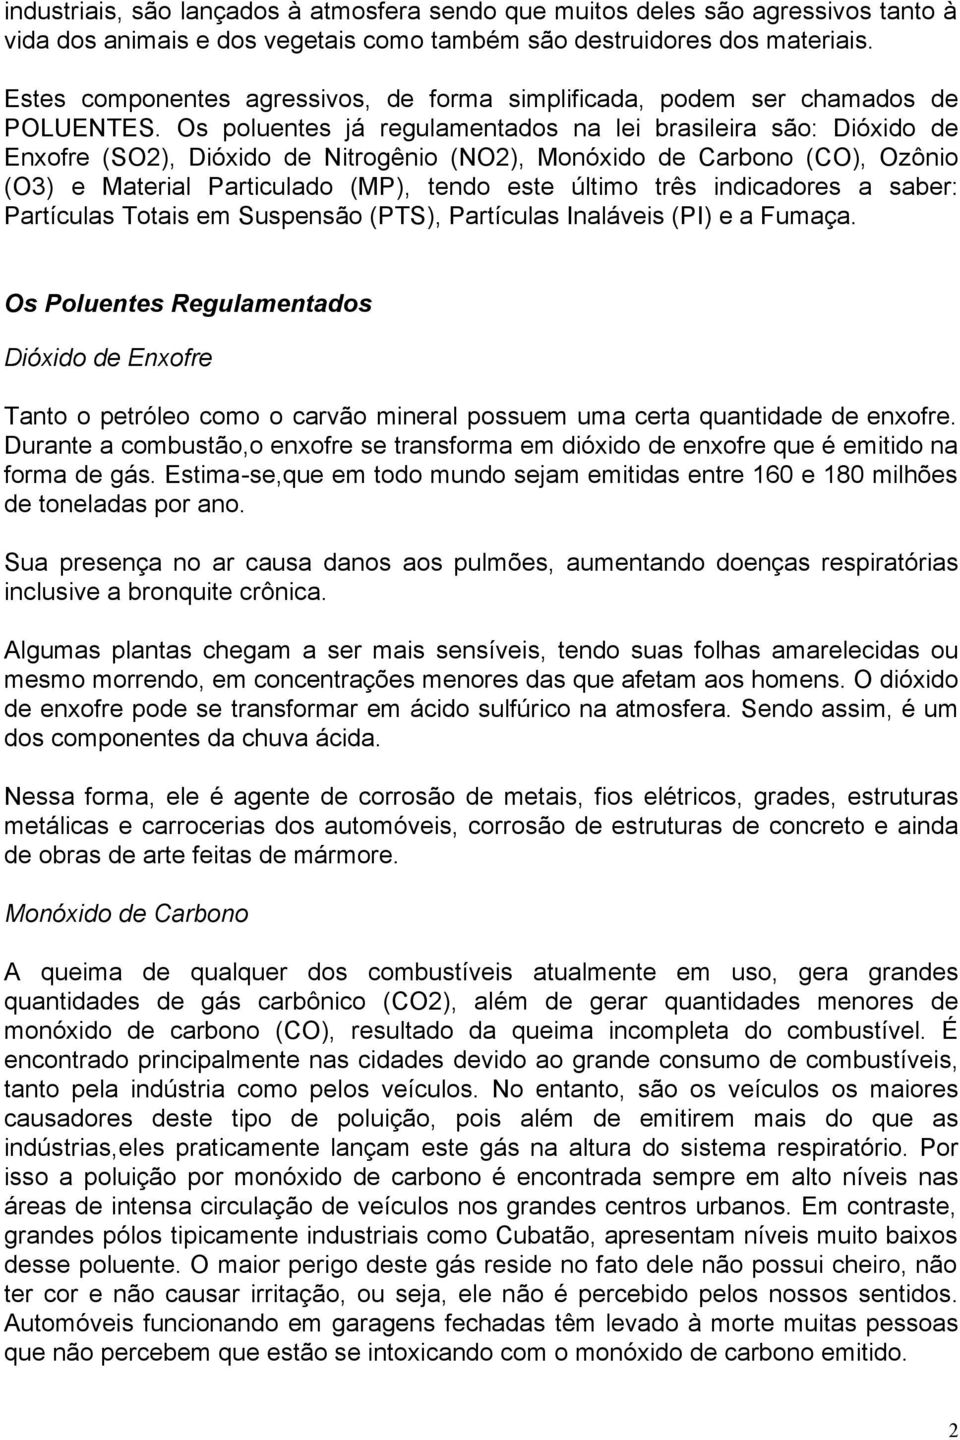 Os poluentes já regulamentados na lei brasileira são: Dióxido de Enxofre (SO2), Dióxido de Nitrogênio (NO2), Monóxido de Carbono (CO), Ozônio (O3) e Material Particulado (MP), tendo este último três